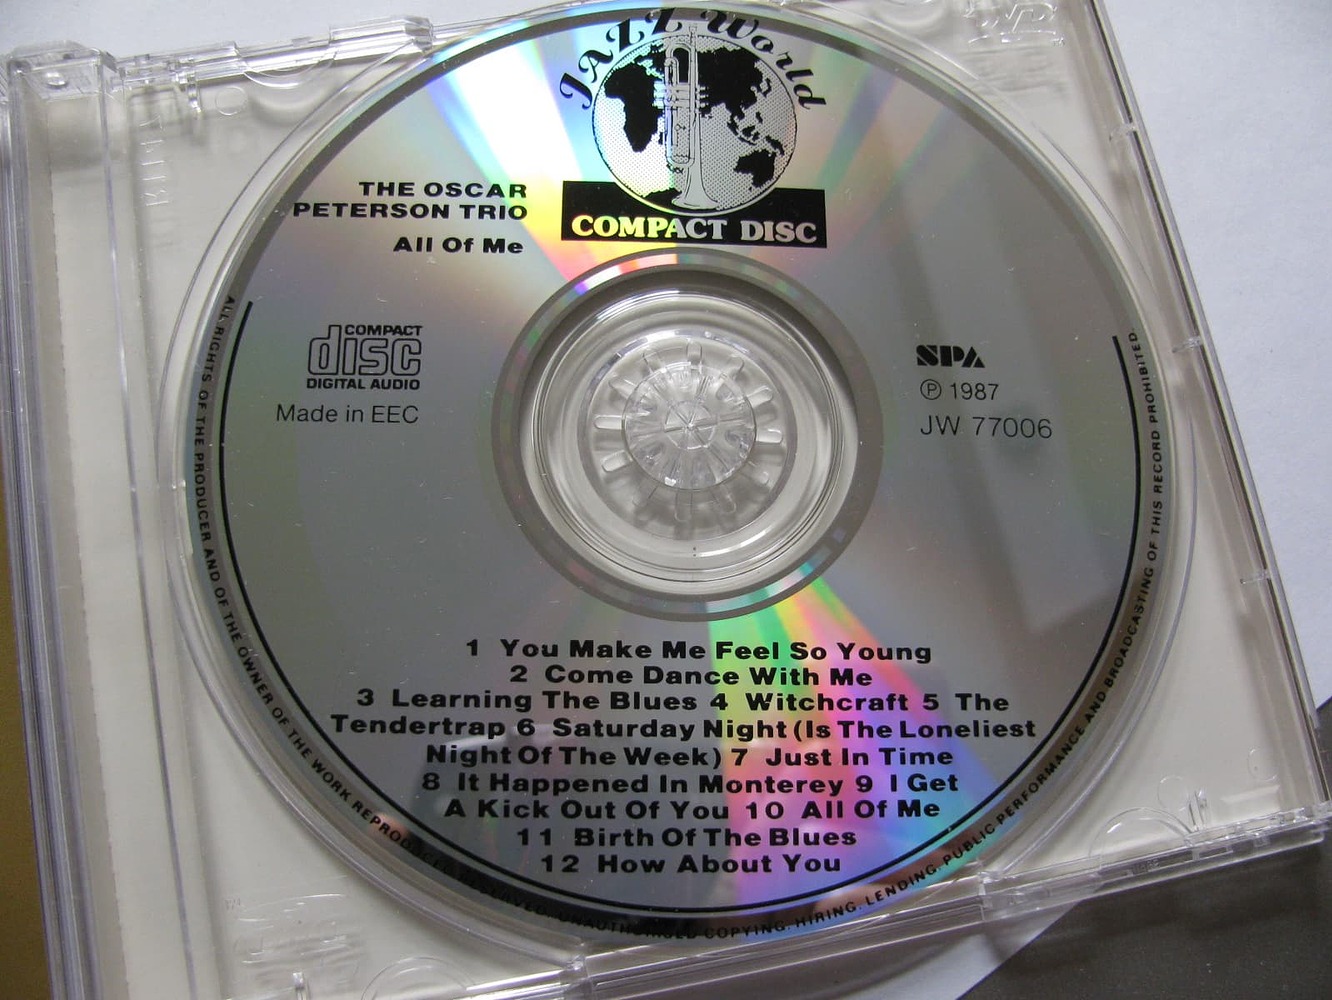 Brain Adams 1984 Compact Disk фирменный. Скупка винил CD диски объявление. Рок-магазин по продаже CD И винила. CD продано не всё.